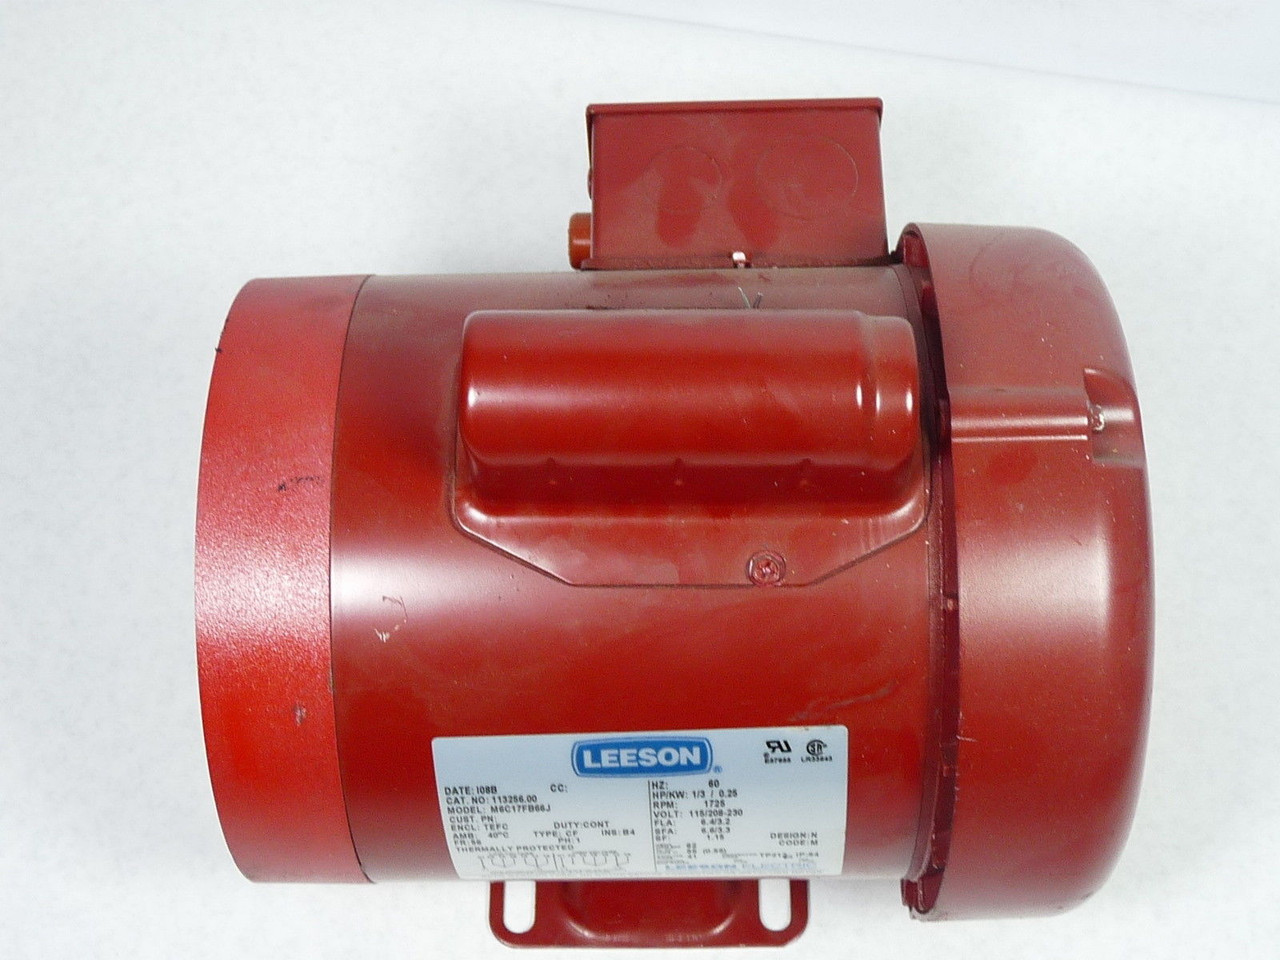 Leeson Hydraulic Pump Motor 1/3HP 1725RPM 115/208-230V 56CZ TEFC 1Ph USED